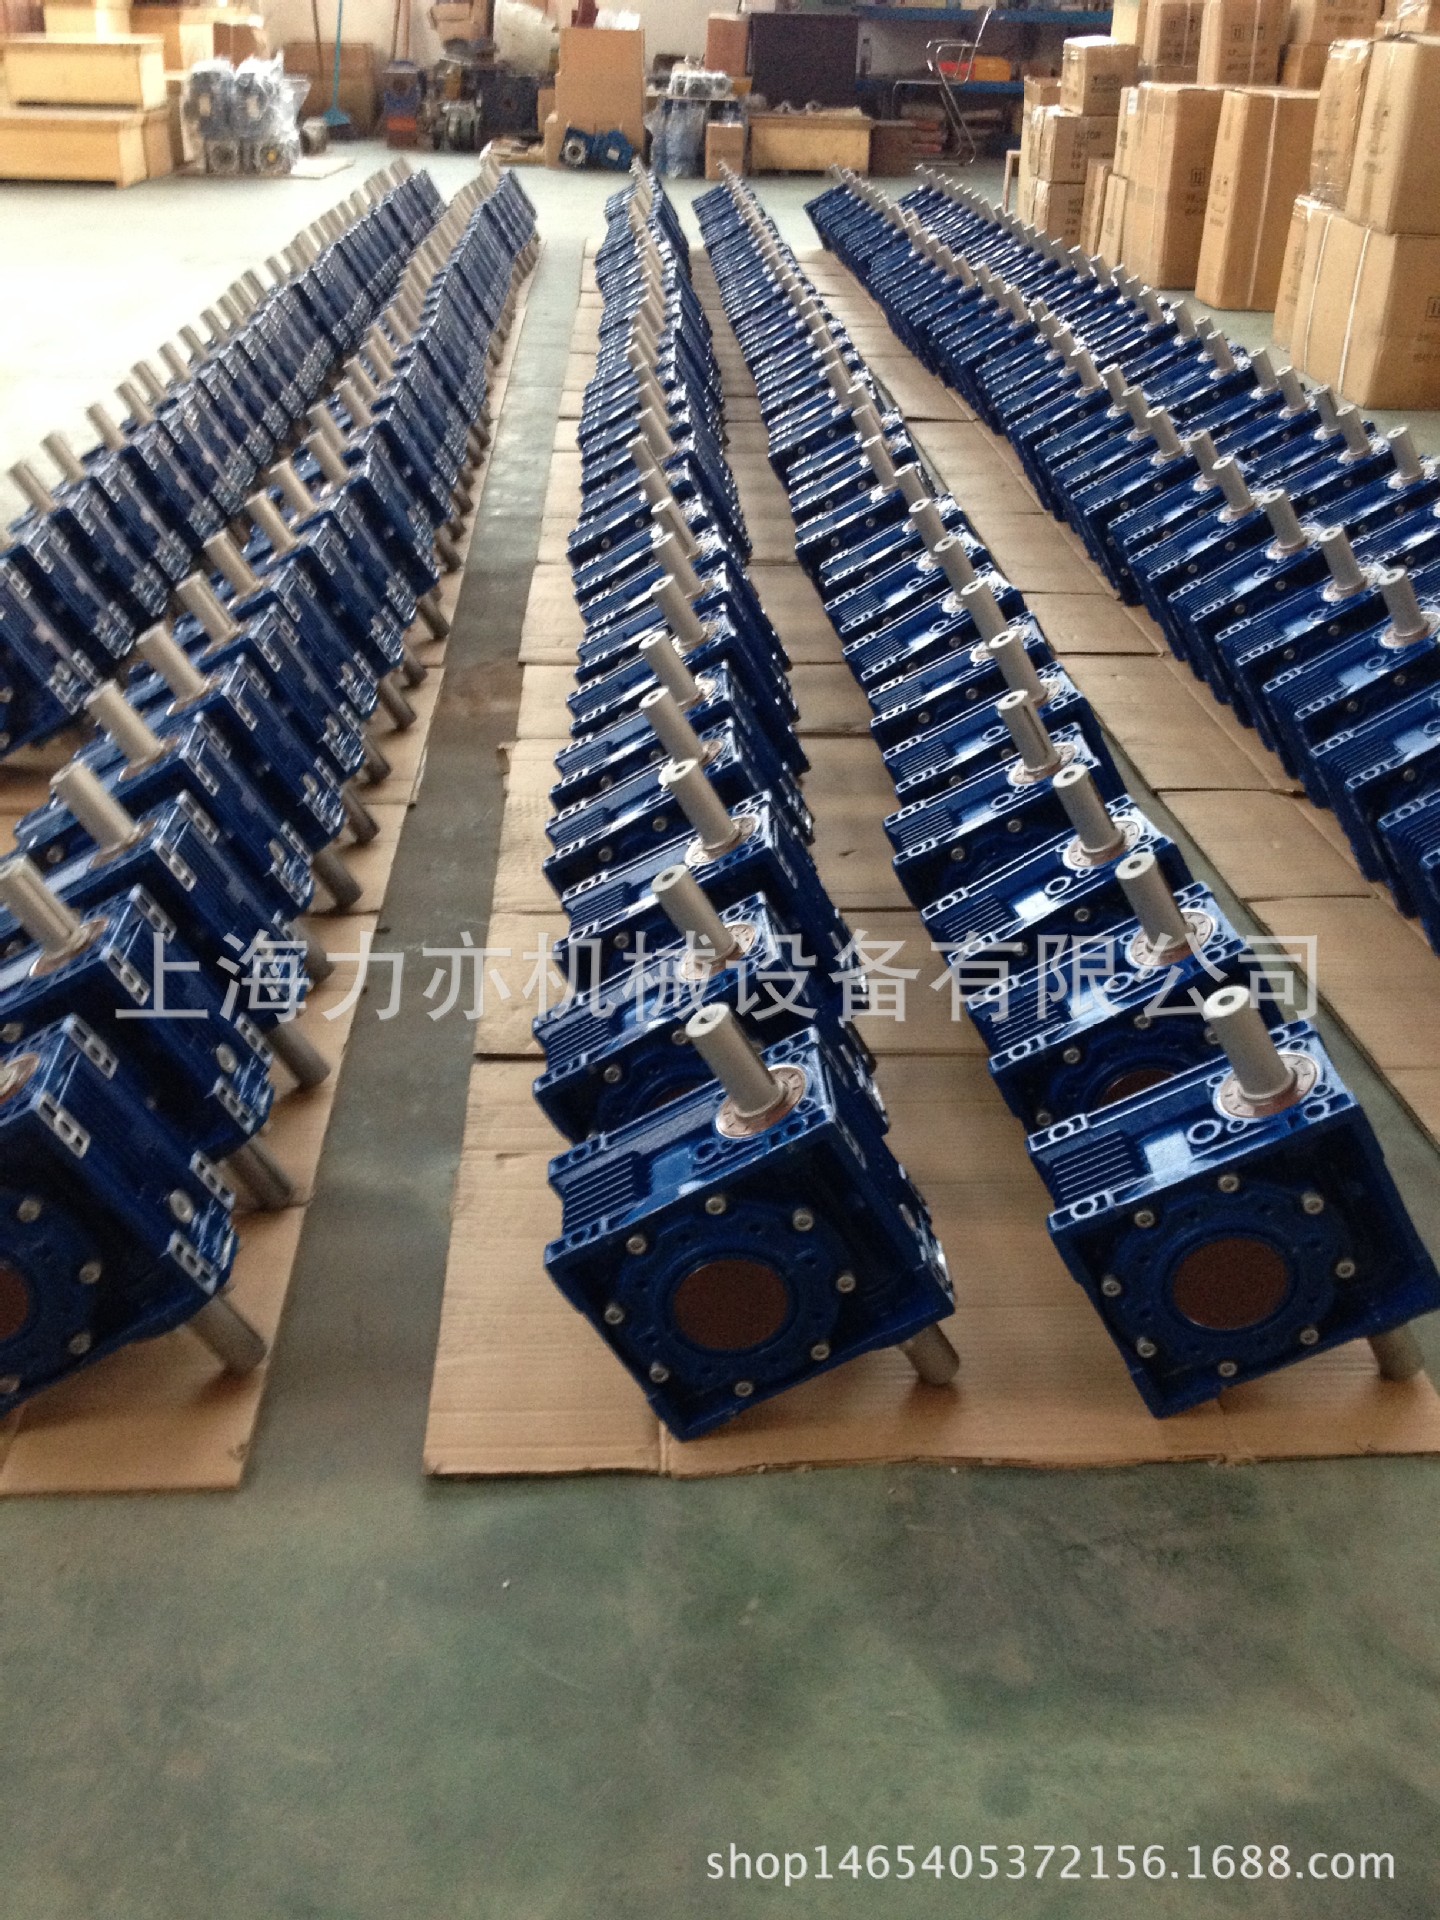 上海力亦牌 RV150减速机 RV150蜗轮减速机 NMRV150减速机 正品 升降机